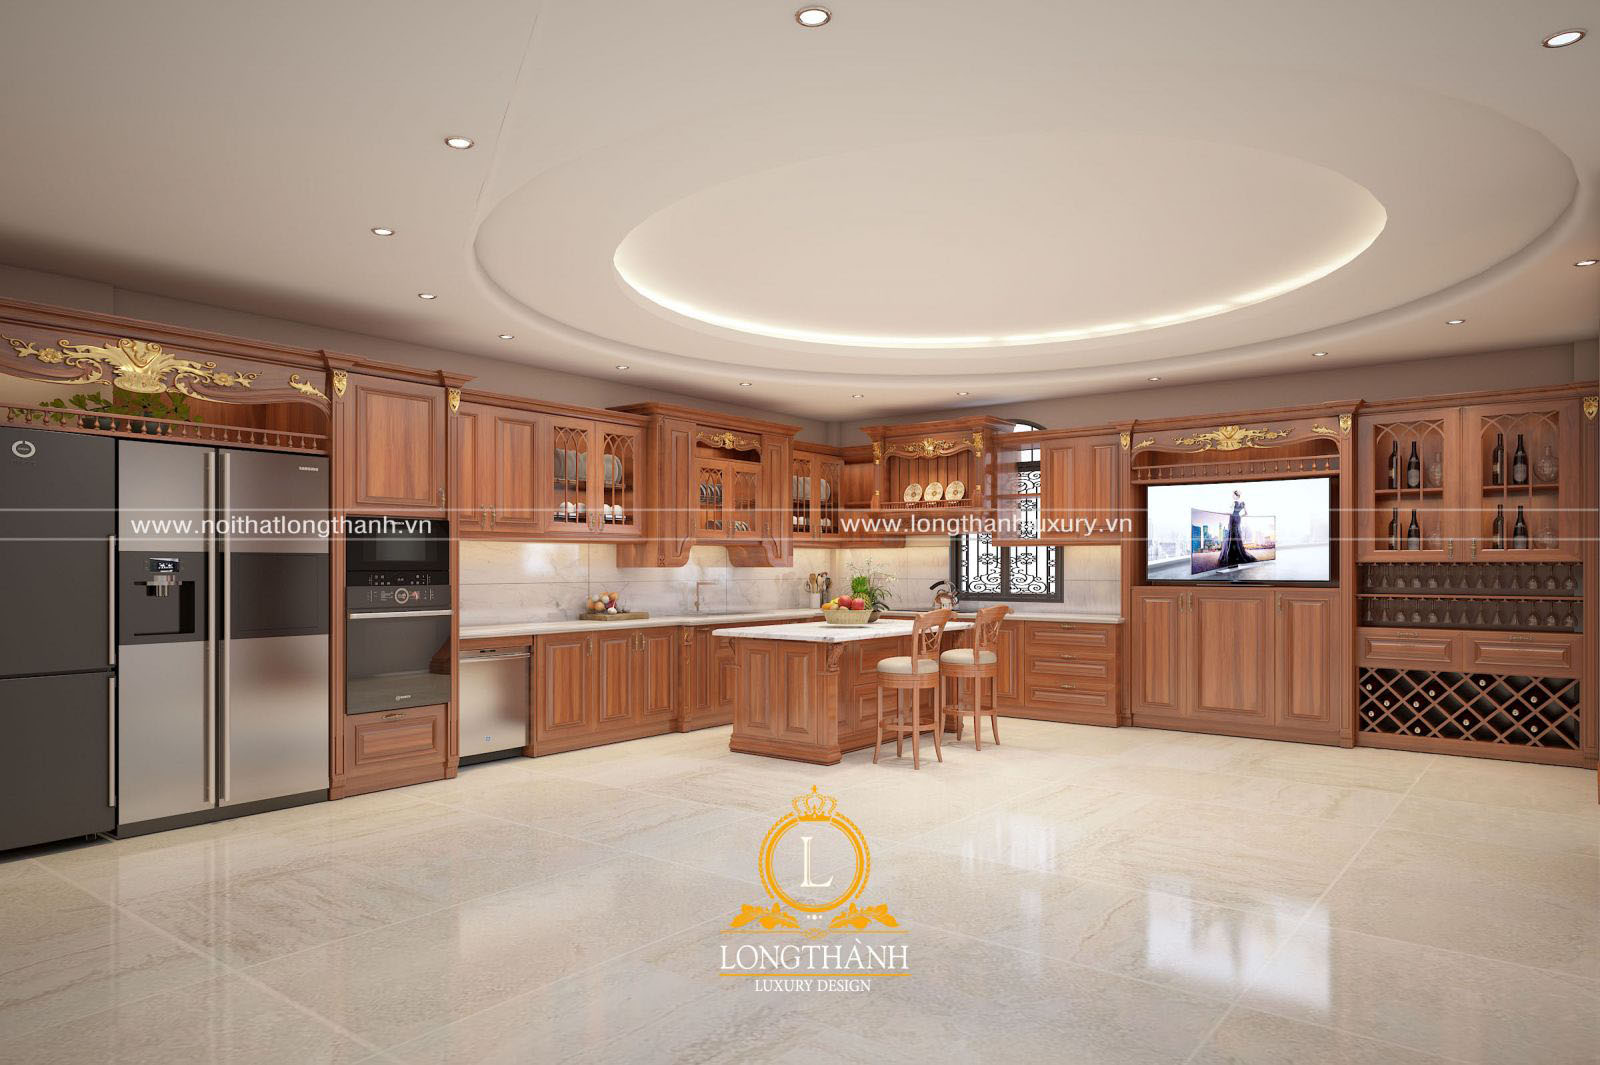 Thiết kế không gian bếp: Hình ảnh được thiết kế với sự khéo léo và chuyên nghiệp, giúp bạn có được ý tưởng mới mẻ và sáng tạo cho không gian bếp trong căn nhà của bạn.